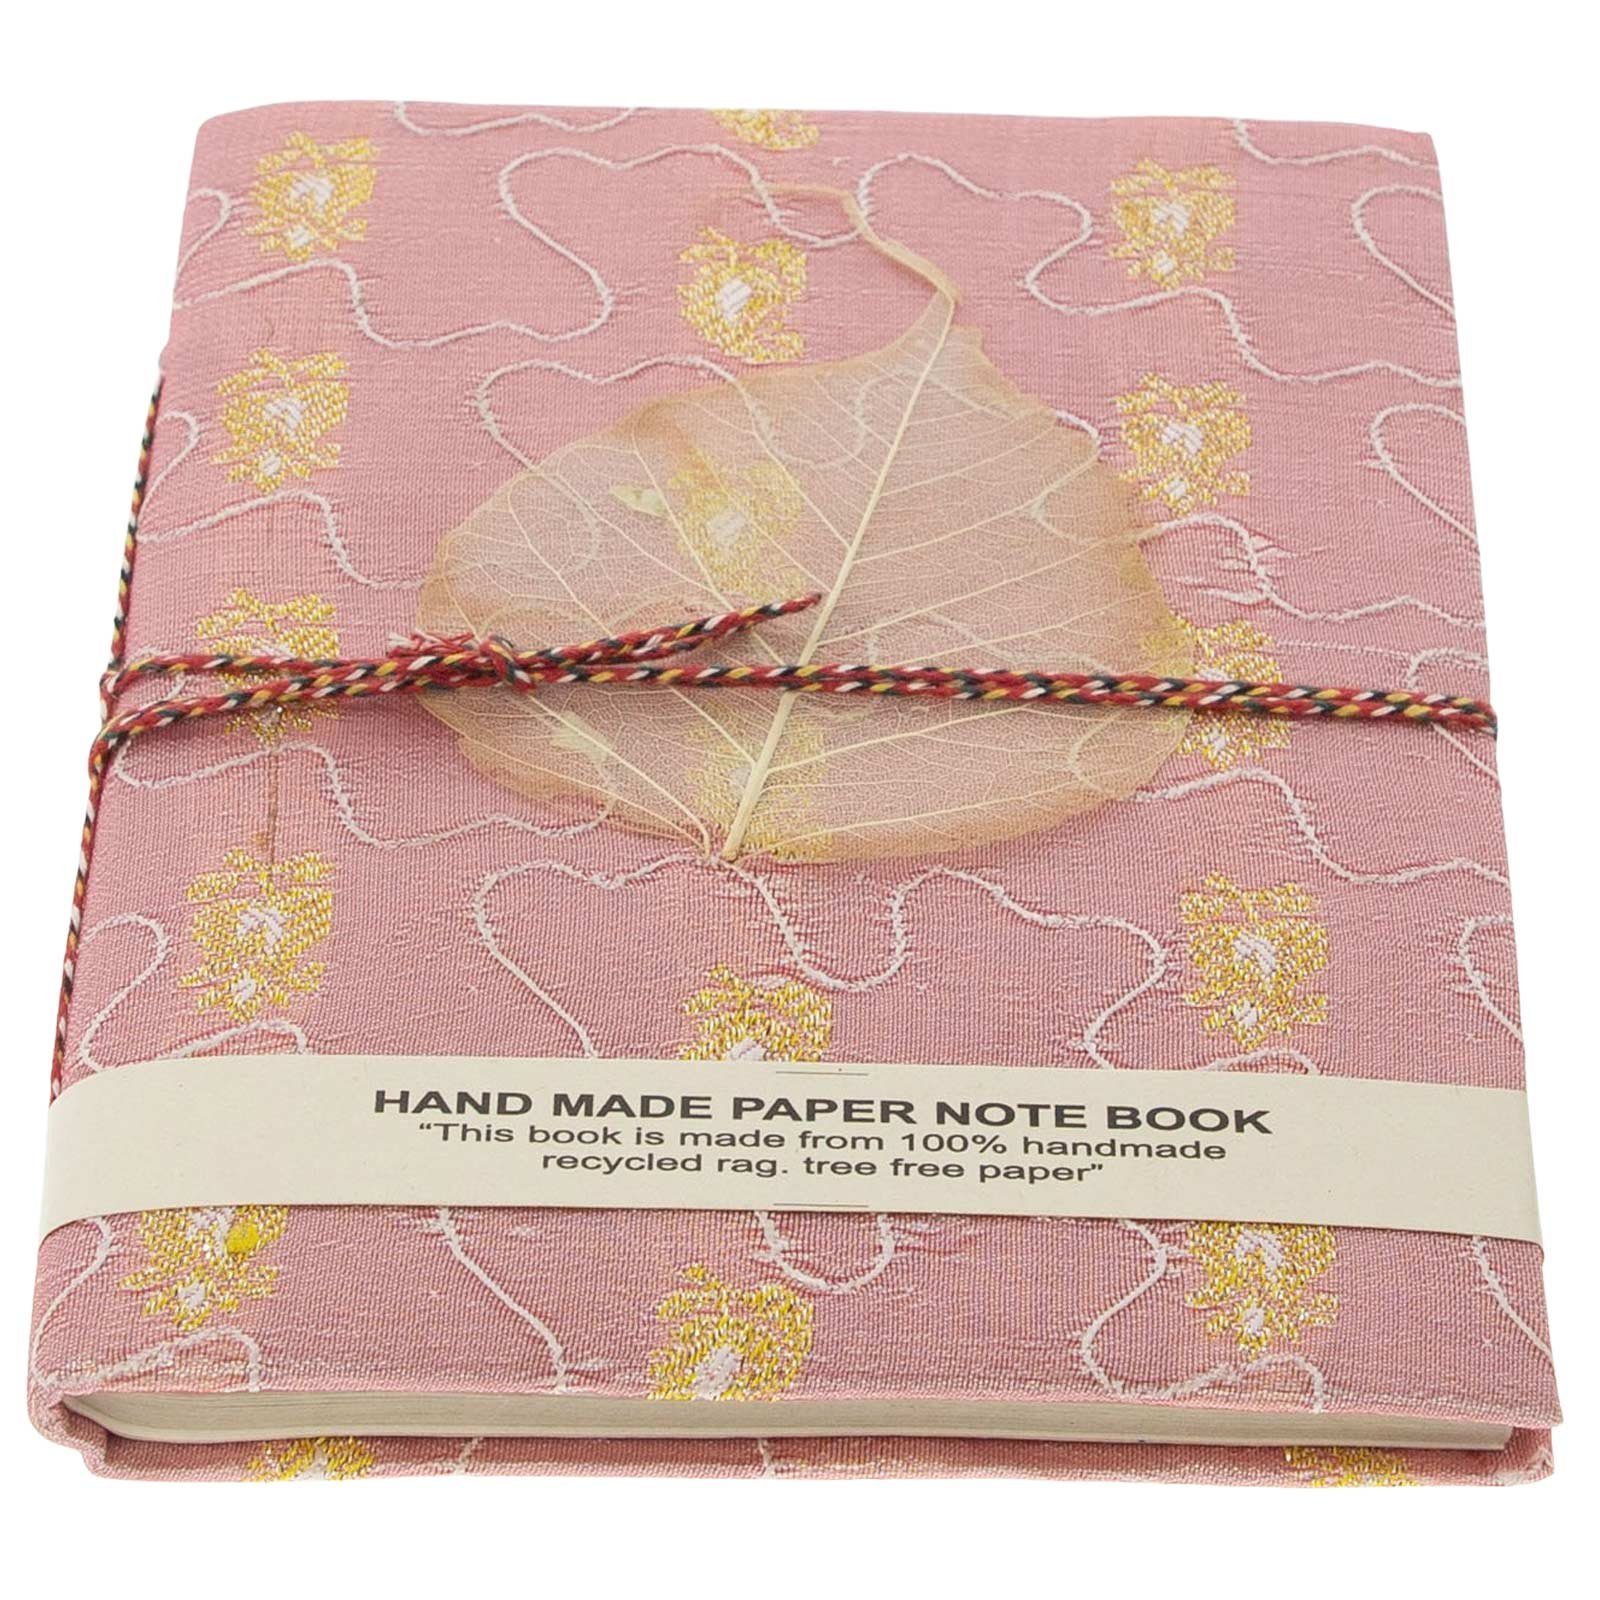 KUNST UND MAGIE Tagebuch Tagebuch Poesie handgefertigt Sari Baumwollpapier-Notizbuch 20x15cm